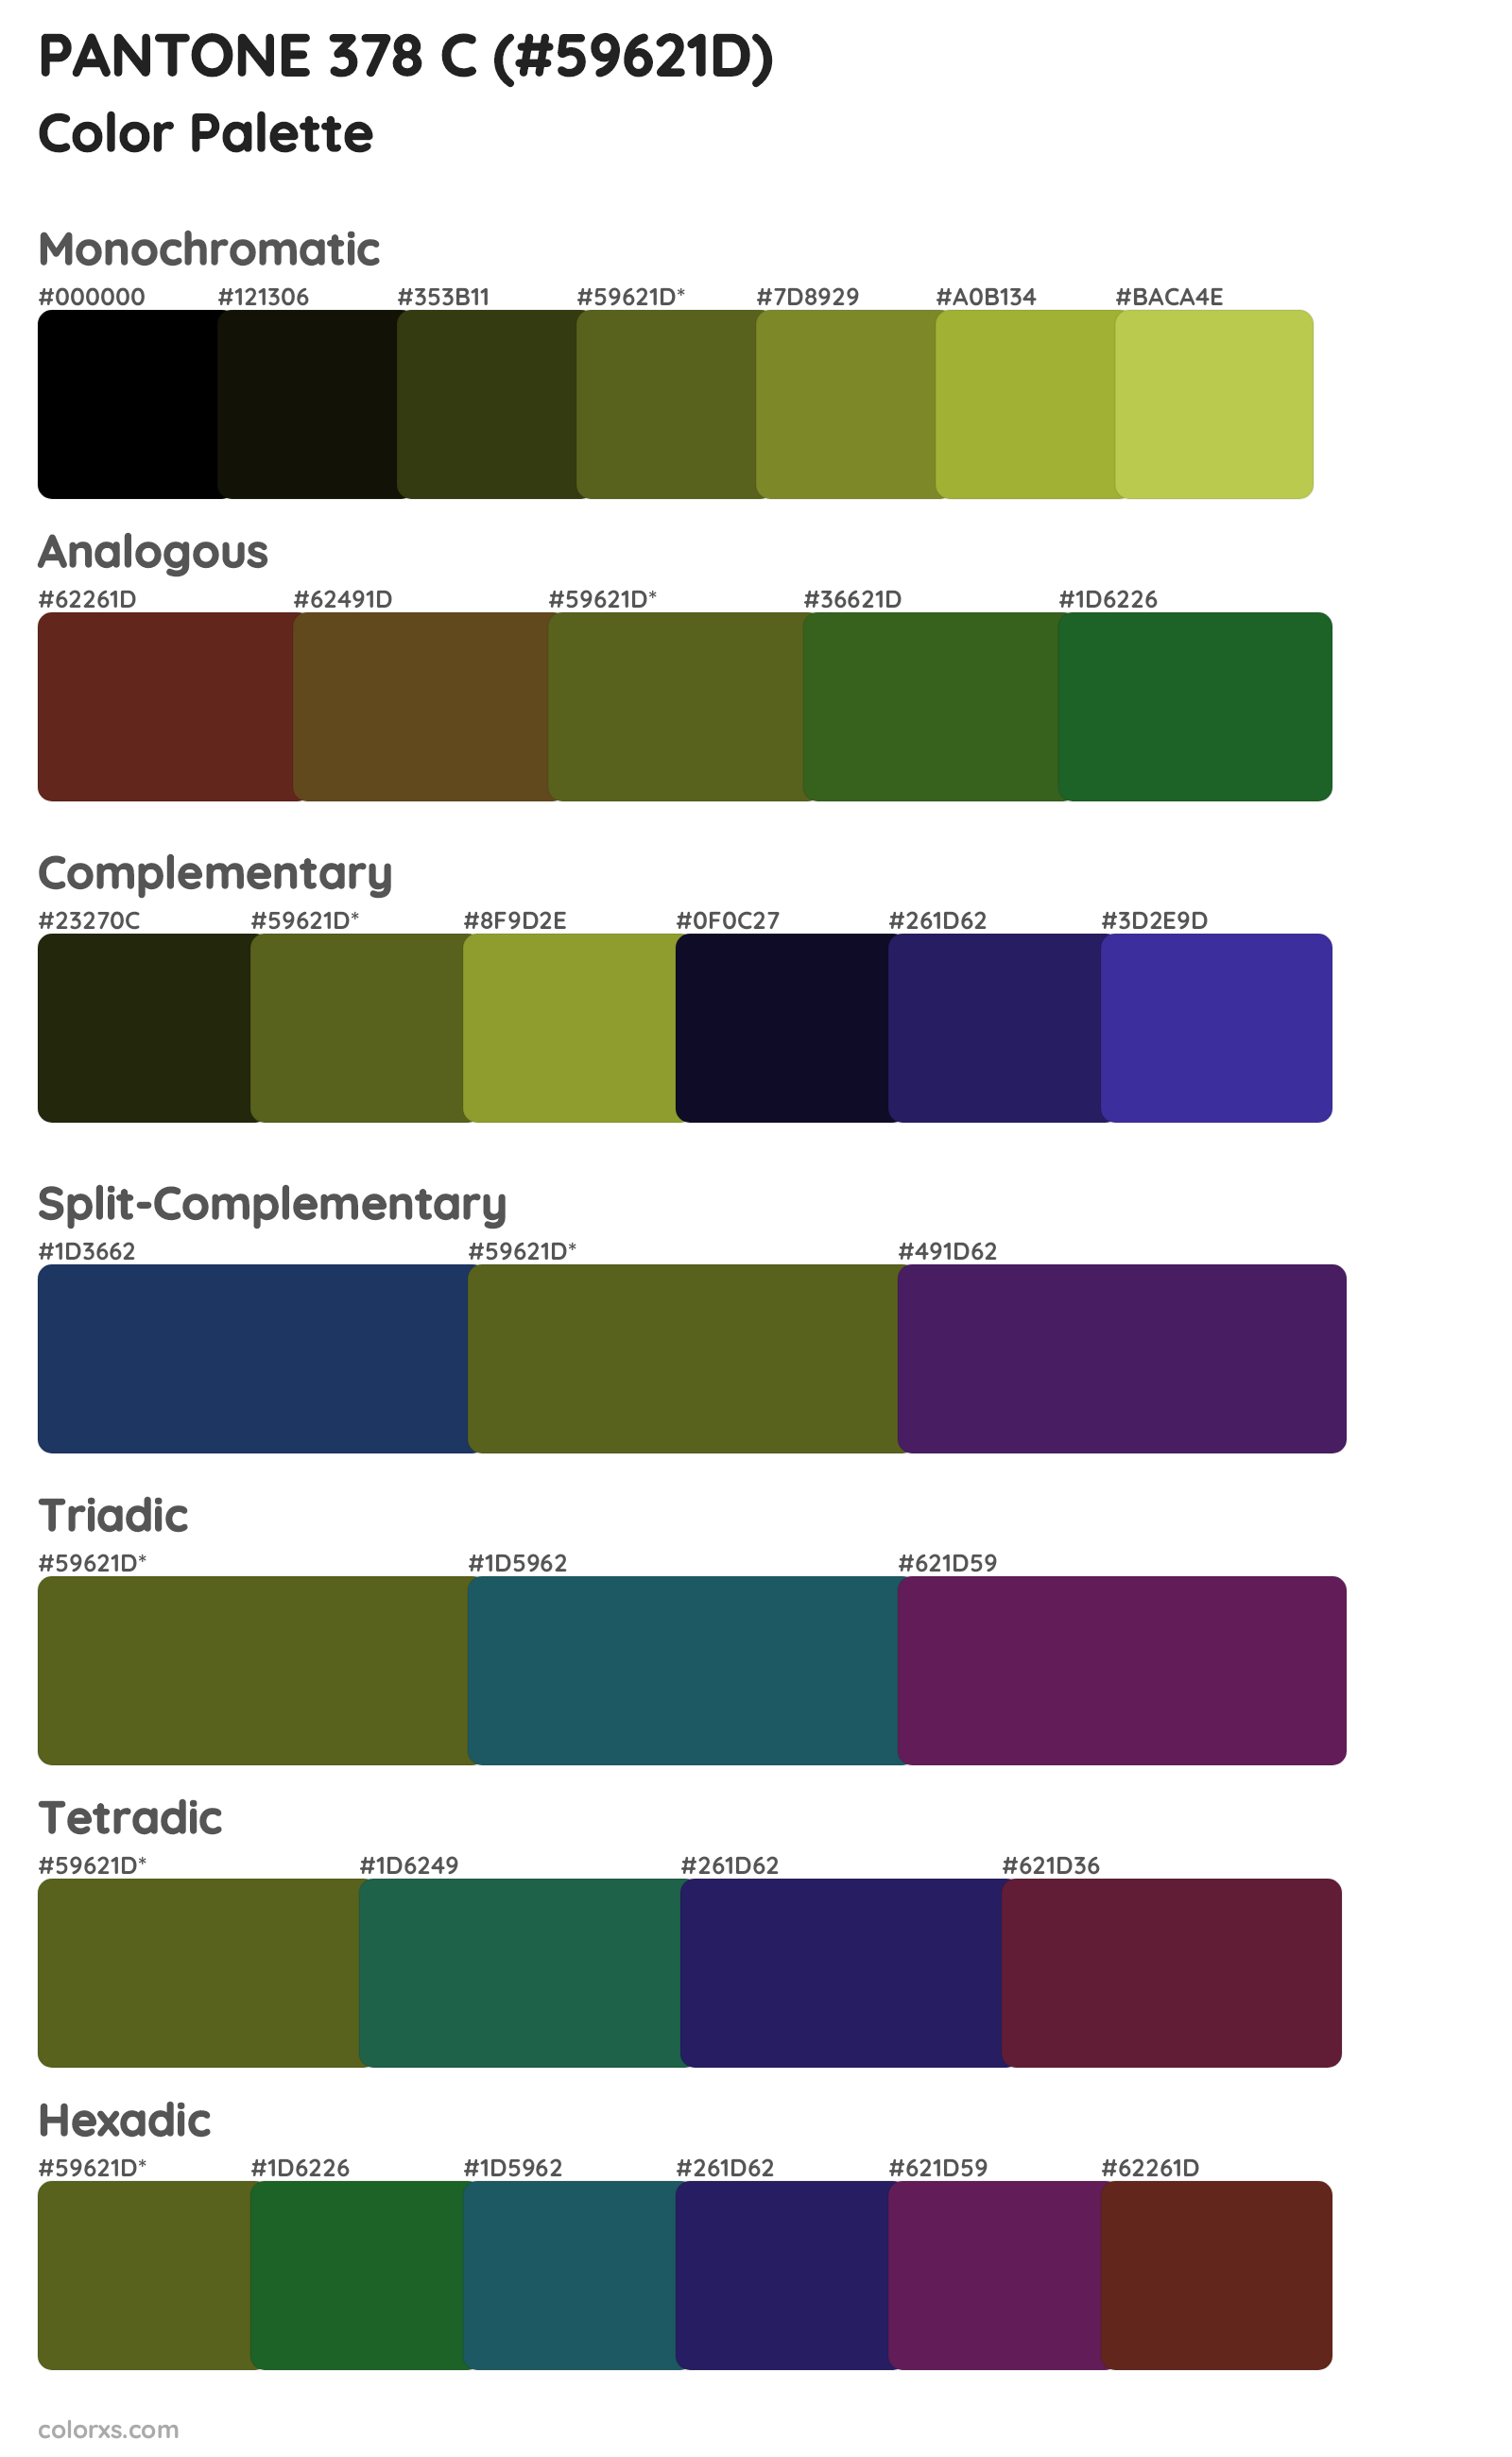 PANTONE 378 C Color Scheme Palettes